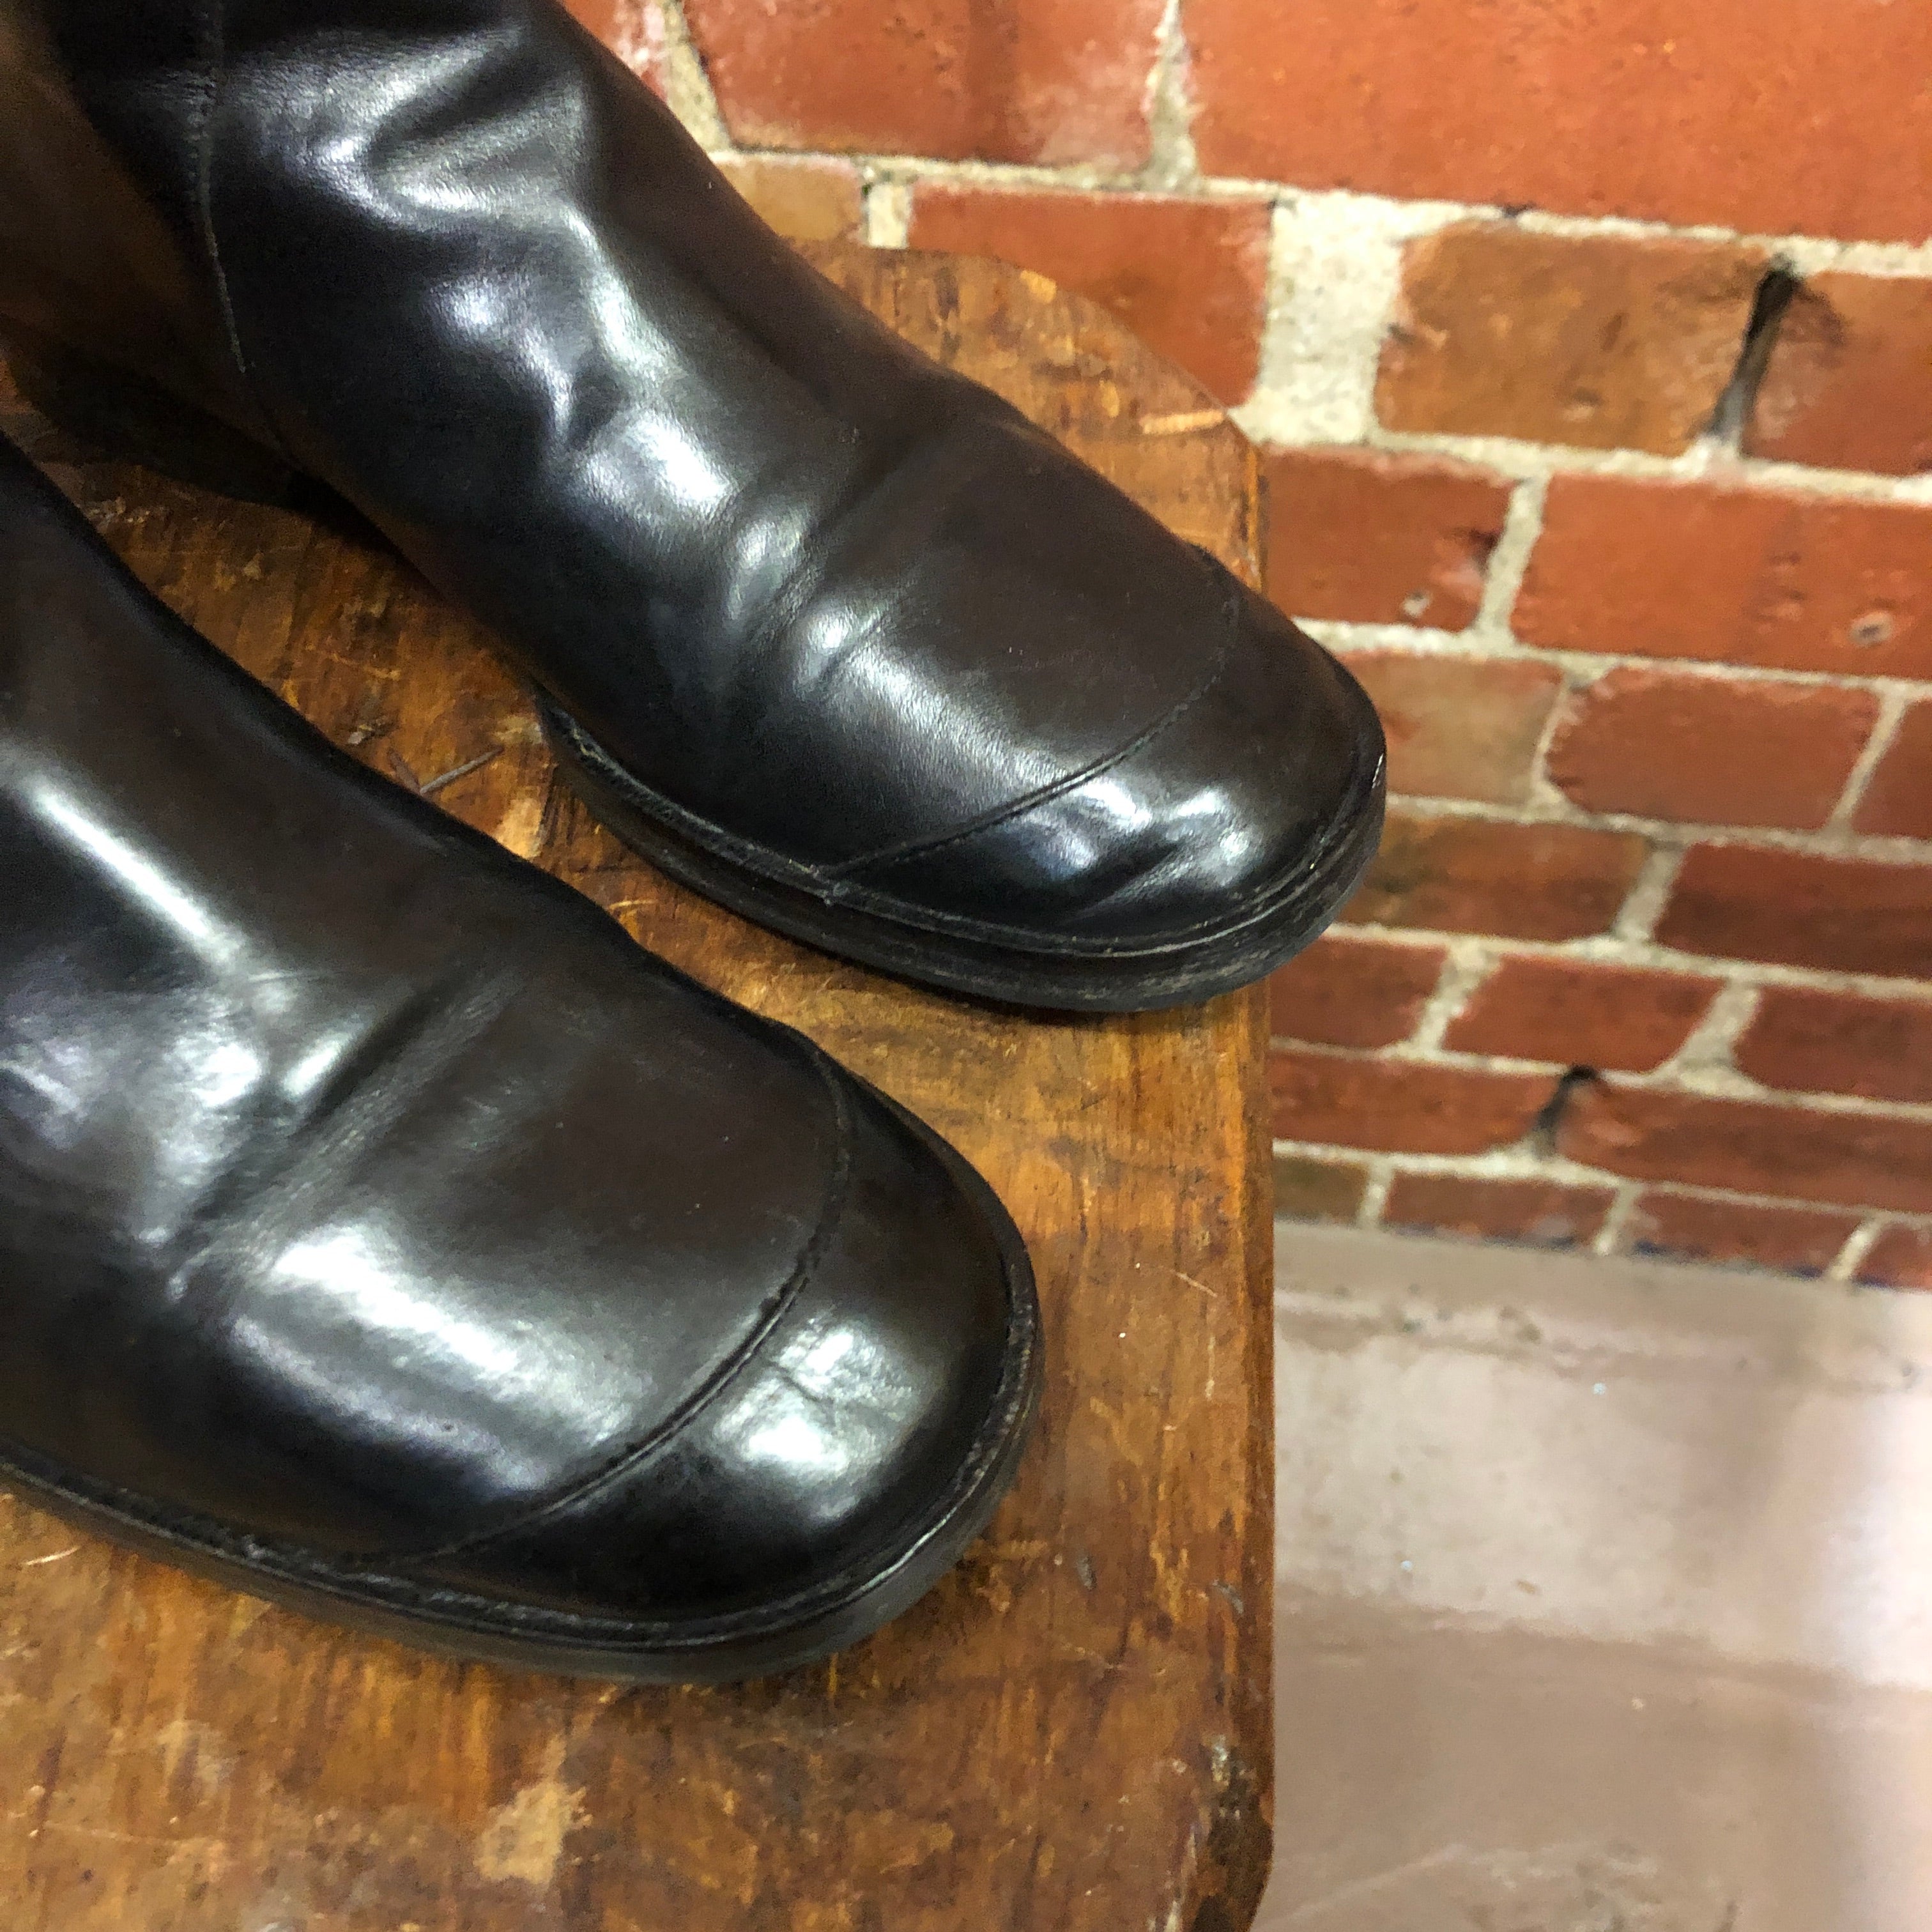 DRIES VAN NOTEN leather boots 38